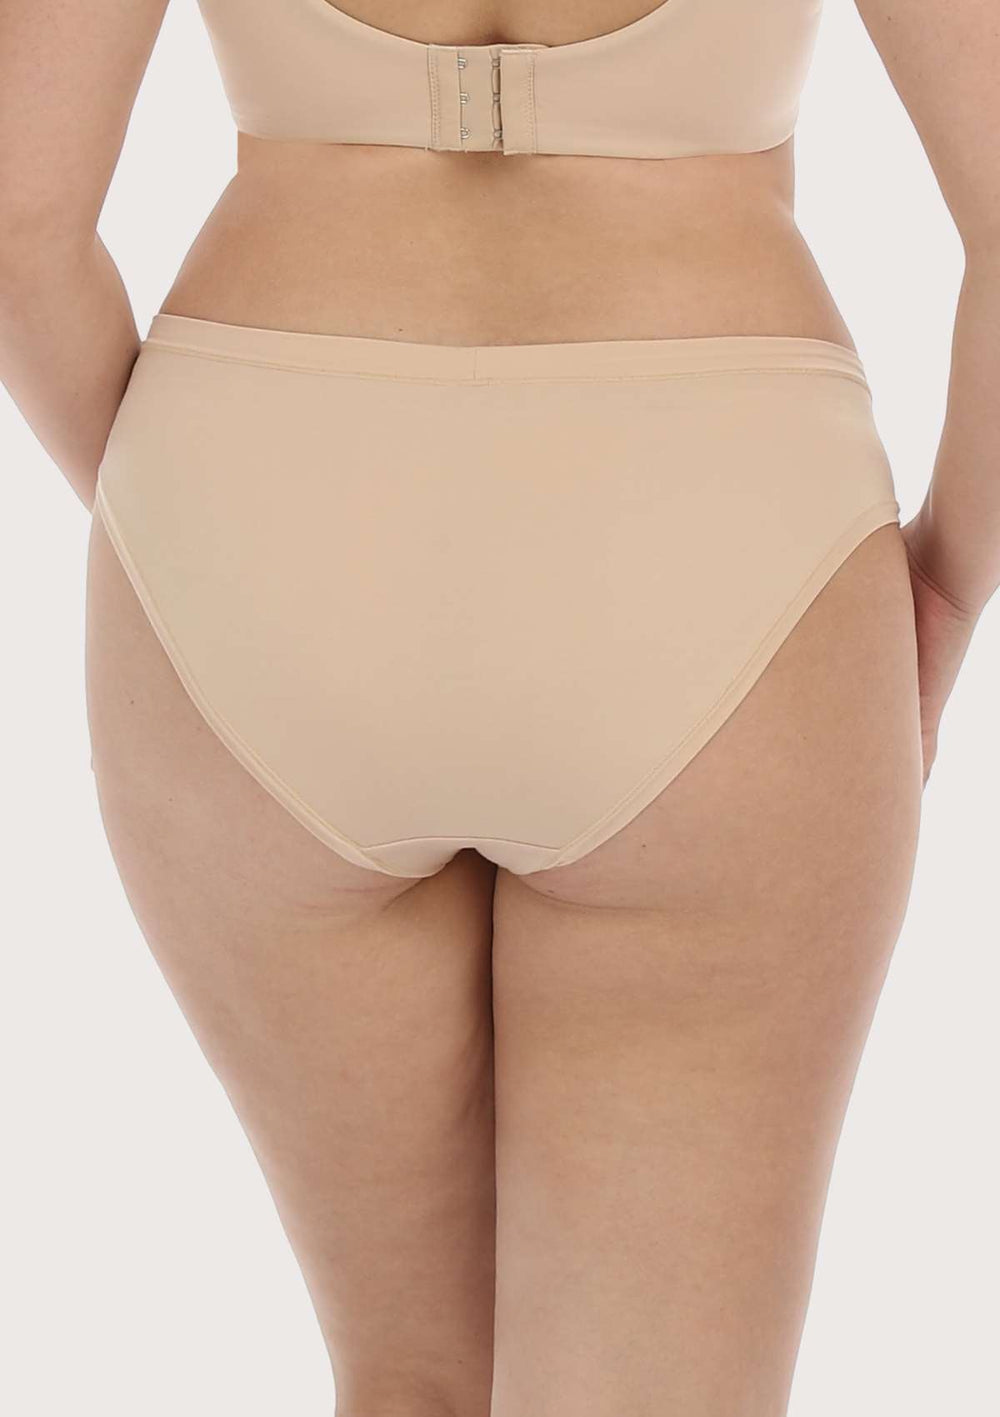 4 Underwear Briefs Woman Underwear Stretch Cotton Hypoallergenic Soft Basic